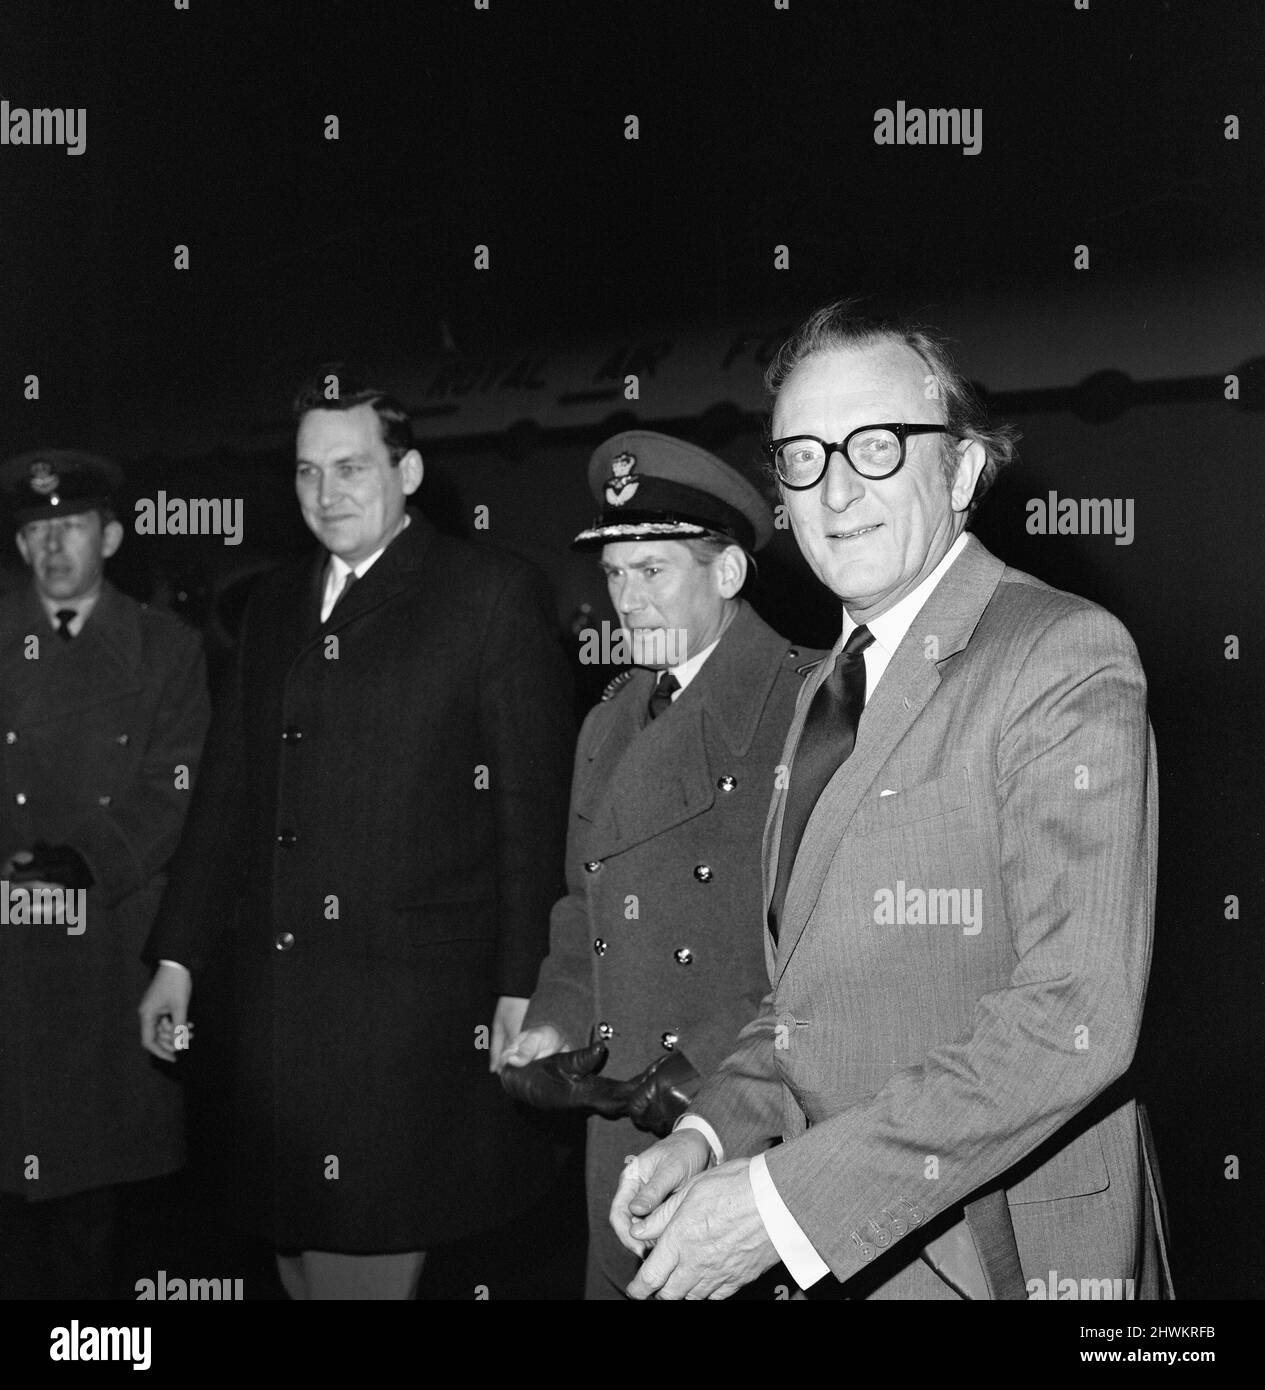 Il Segretario di Stato per la Difesa Lord Carrington arriva all'aeroporto di Heathrow da Roma dove ha avuto colloqui con il primo Ministro Dom Mintoff di Malta durante la crisi in corso. 28th gennaio 1972. Foto Stock